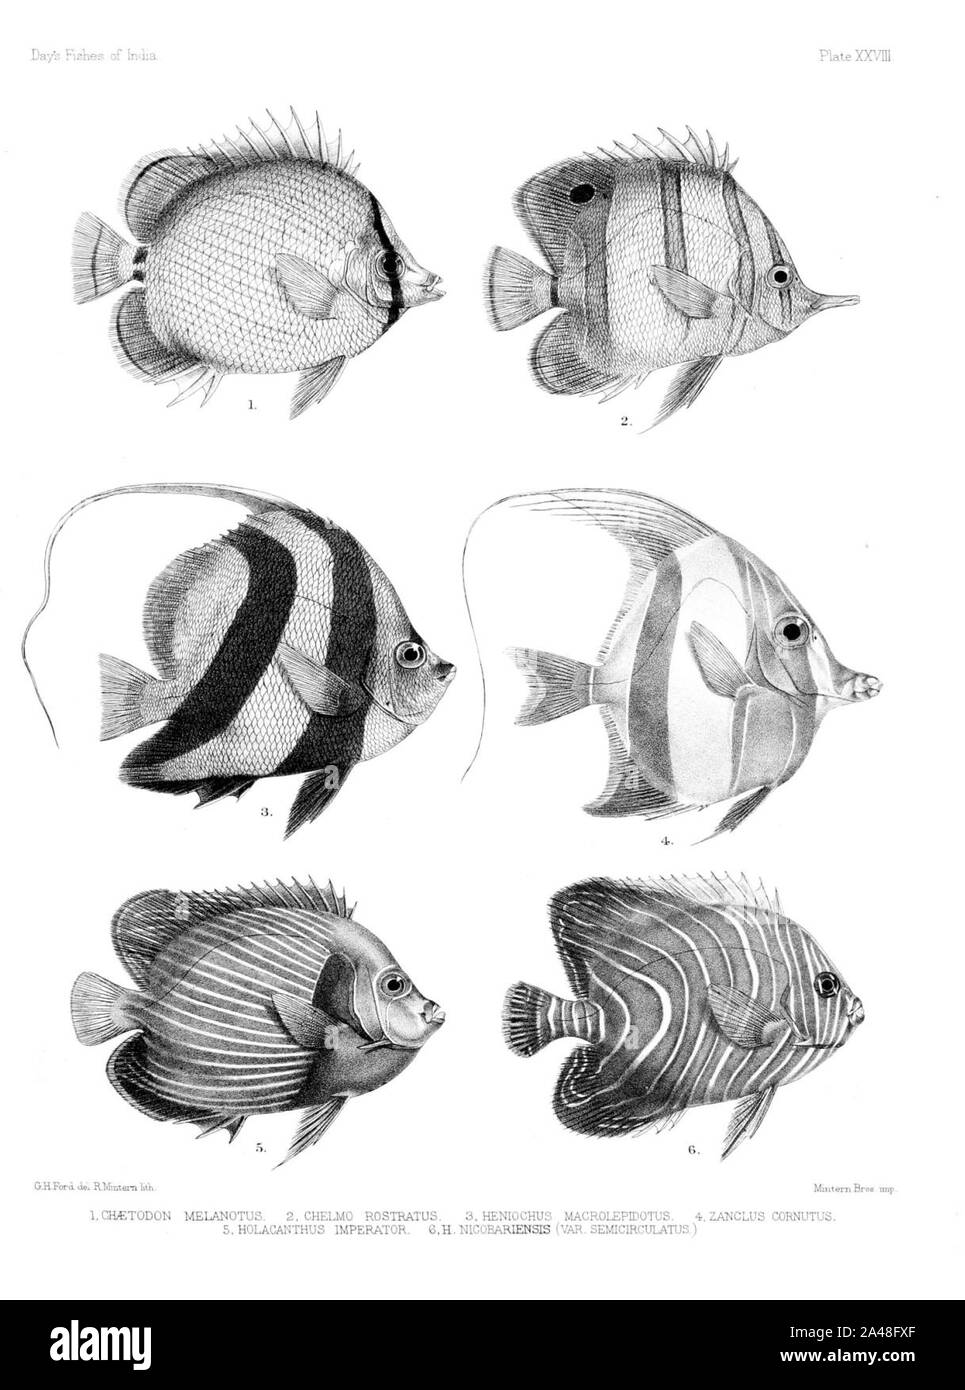 Fische von Indien. Atlas. Platte XXVIII. Stockfoto